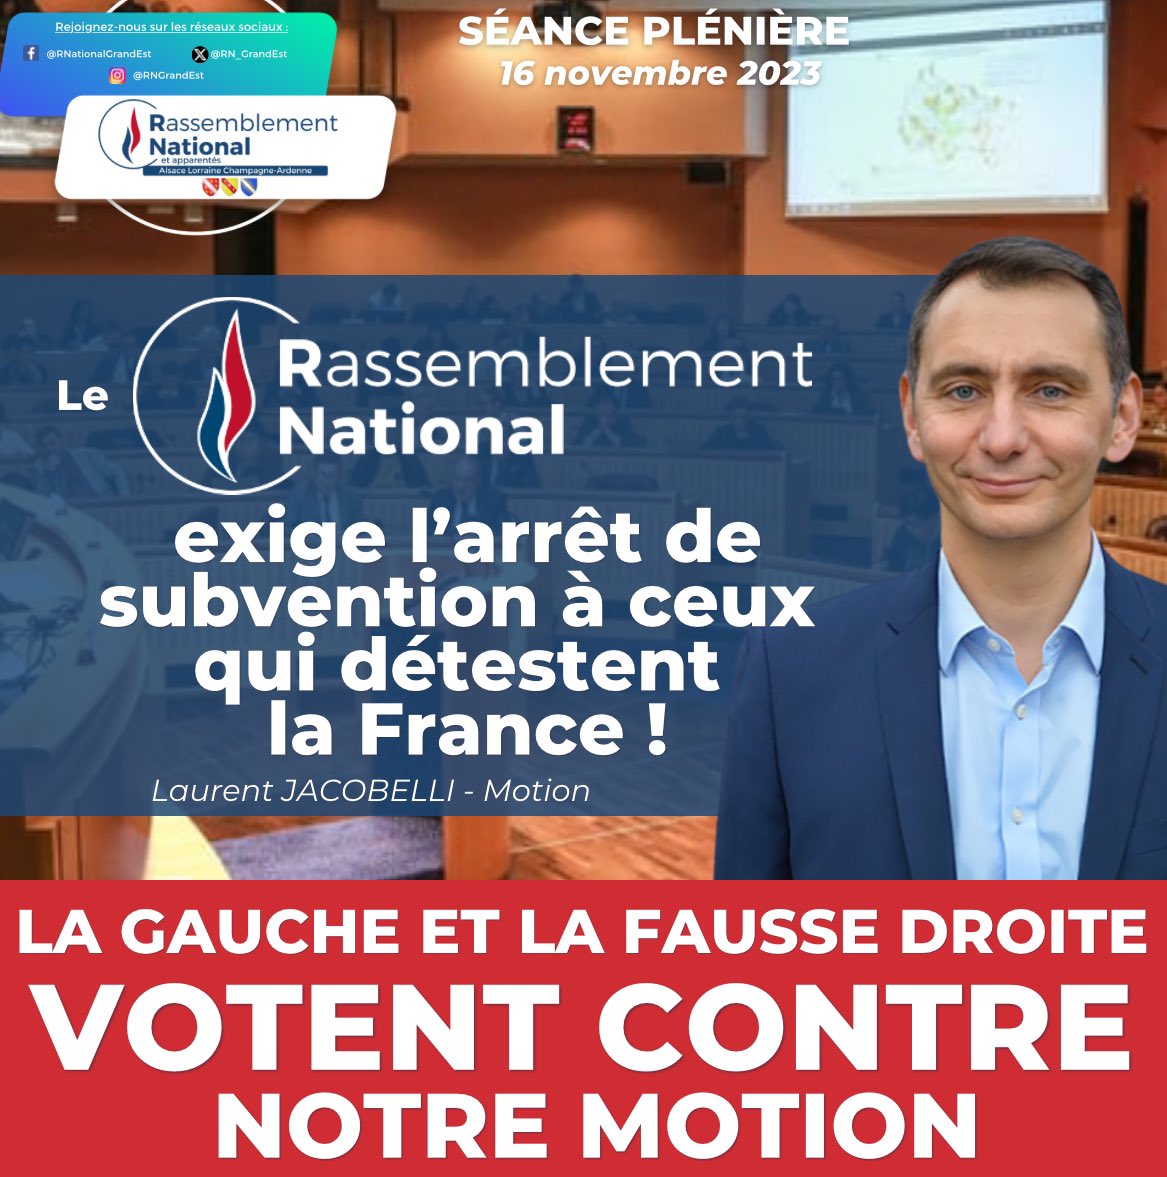 🔴 La GAUCHE et la FAUSSE DROITE votent CONTRE notre motion pour exiger l’arrêt de subvention à ceux qui détestent la France ! #SPNov23